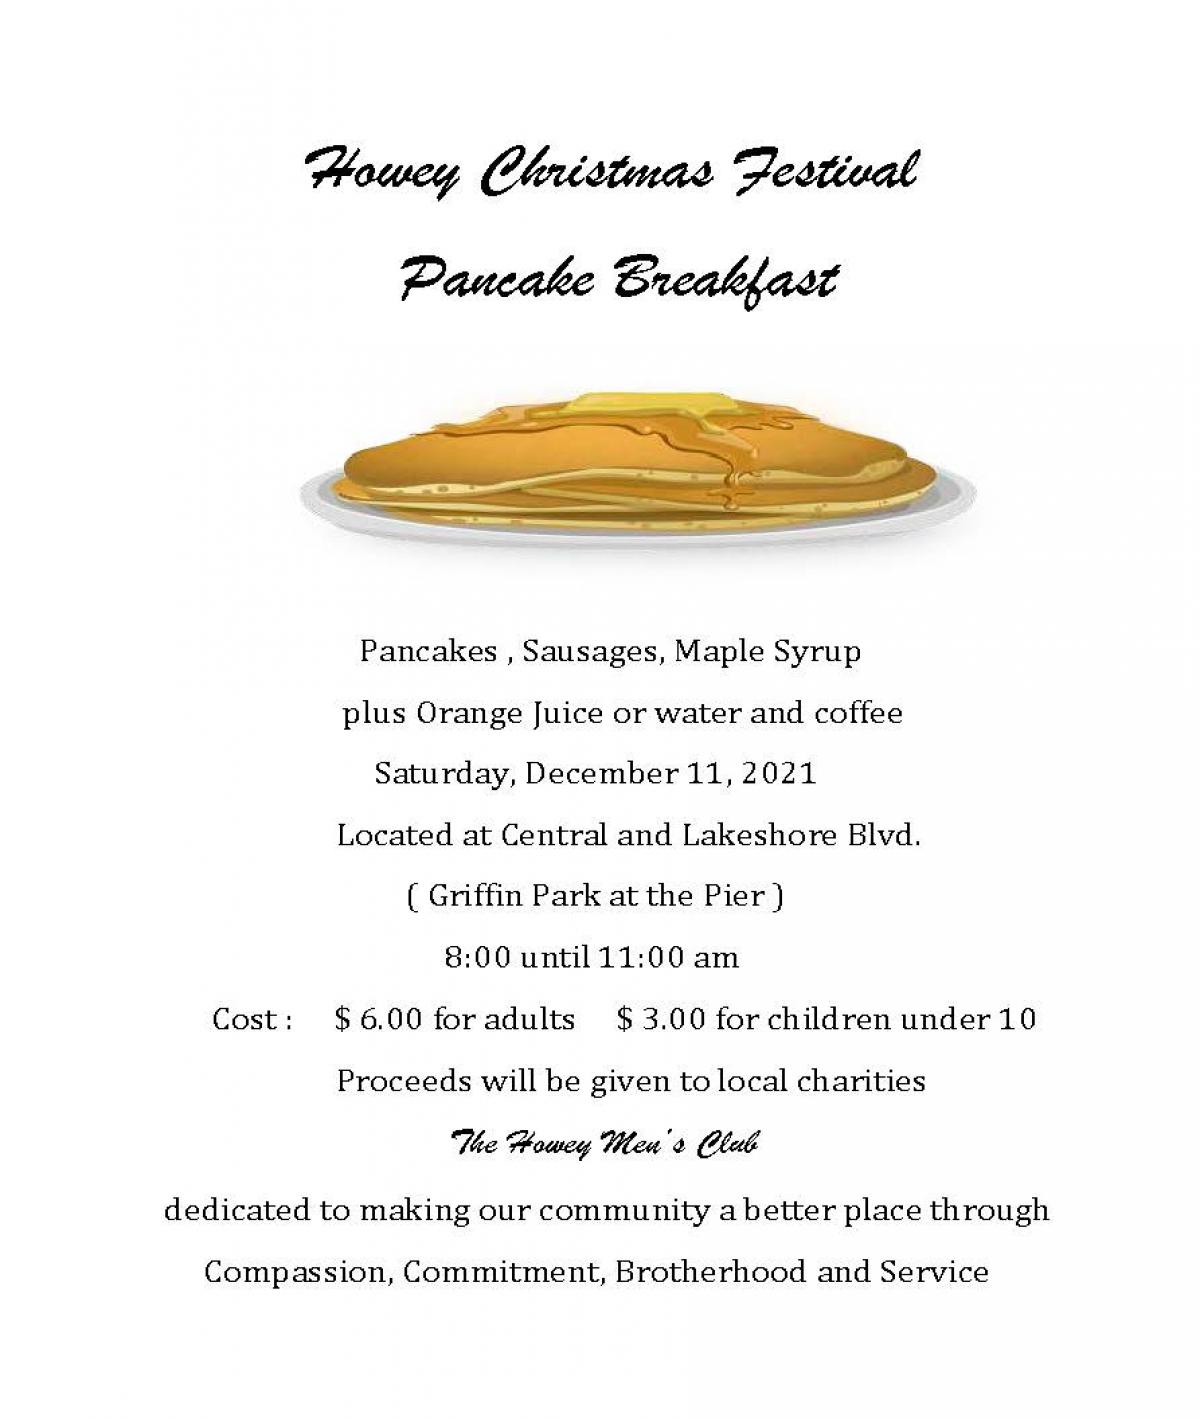 Howey Christmas Festival Pancake Breakfast Announcement